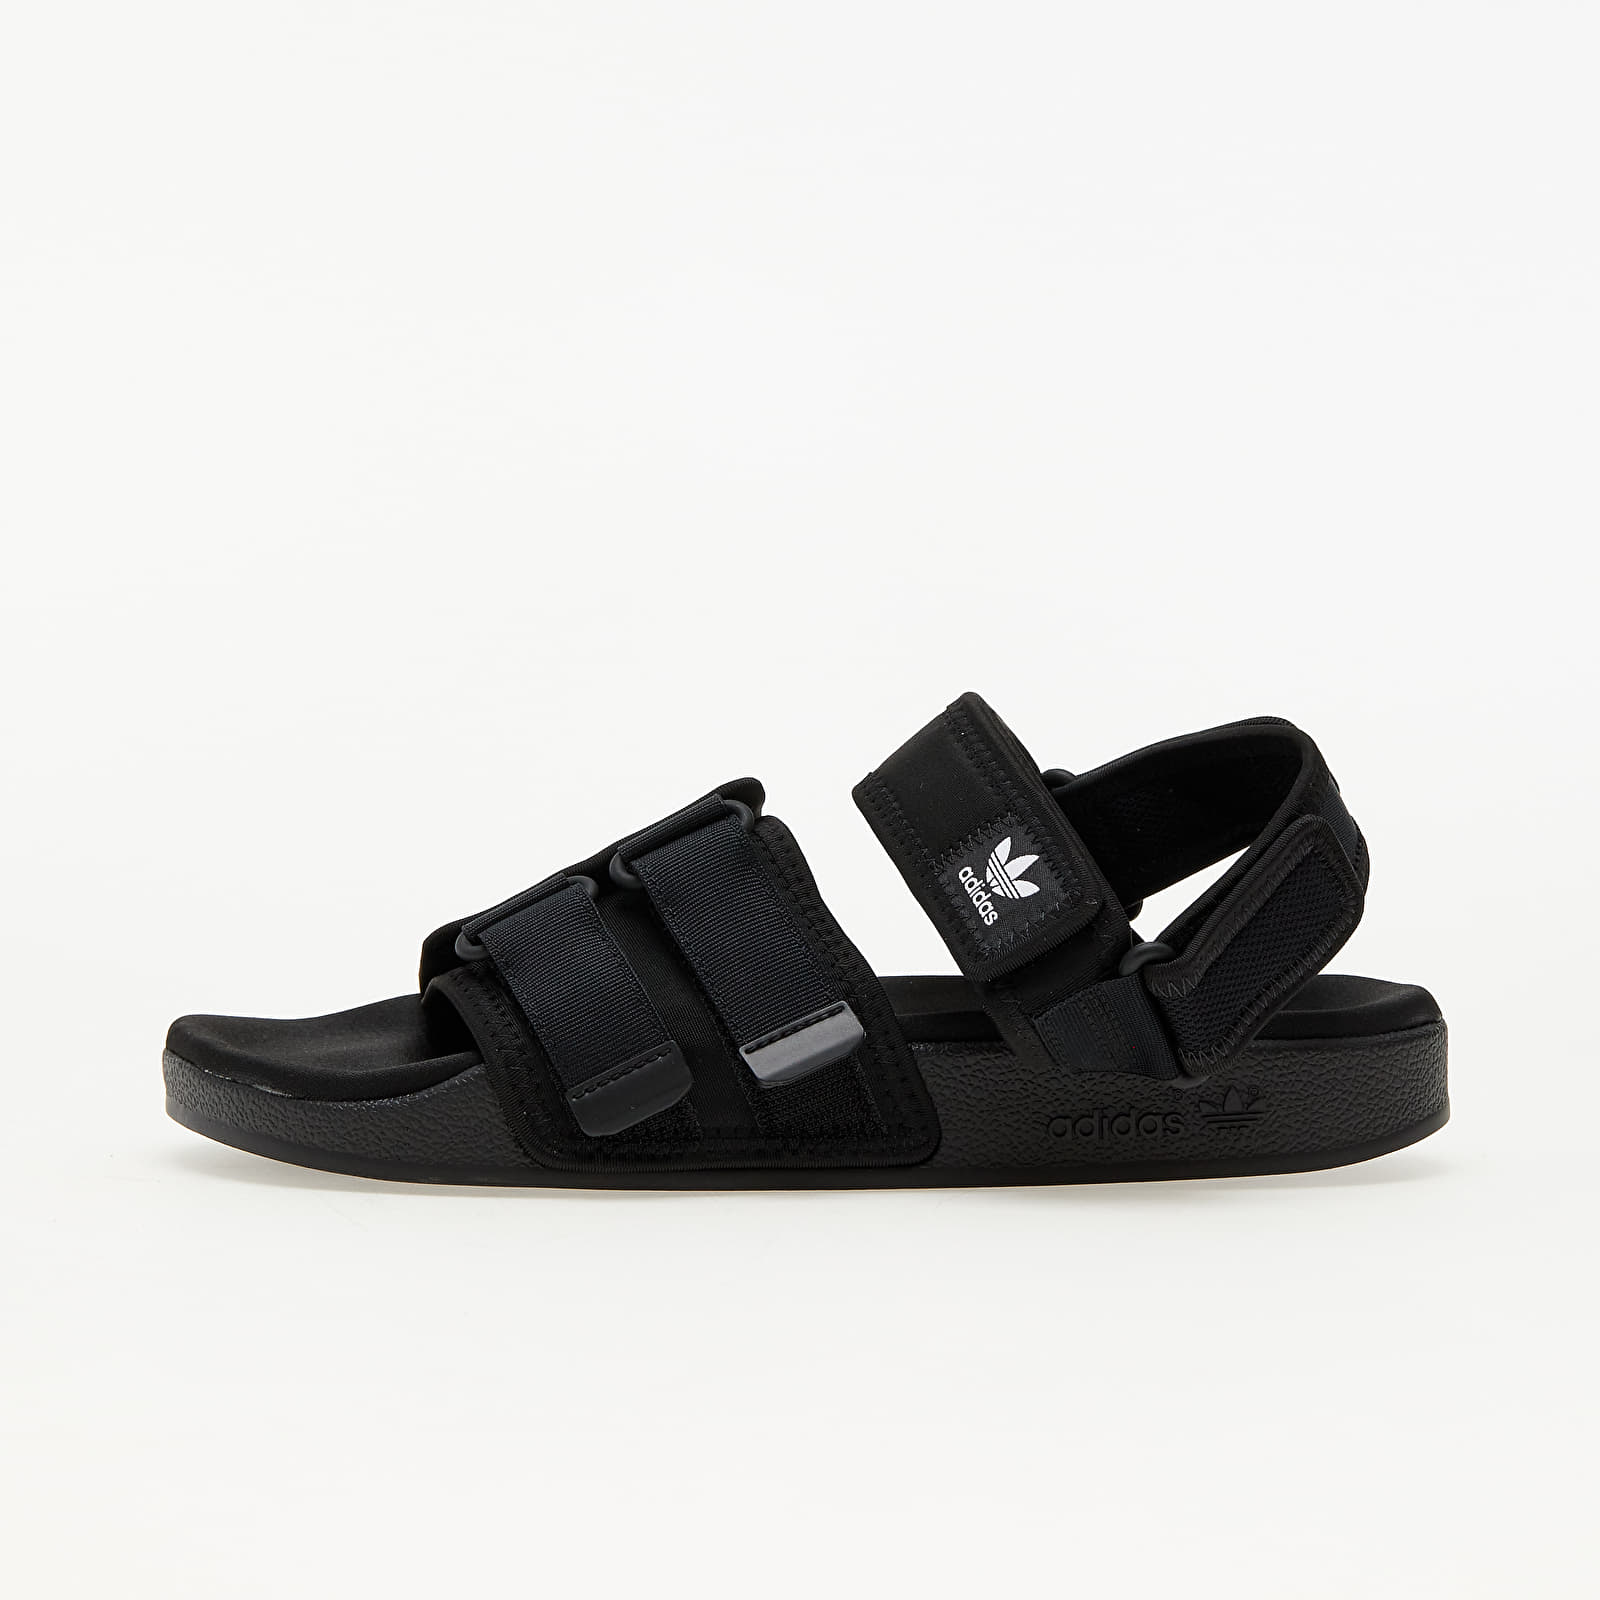 Men's shoes adidas Adilette Sandal 4.0 Core Black/ Core Black/ Ftw White